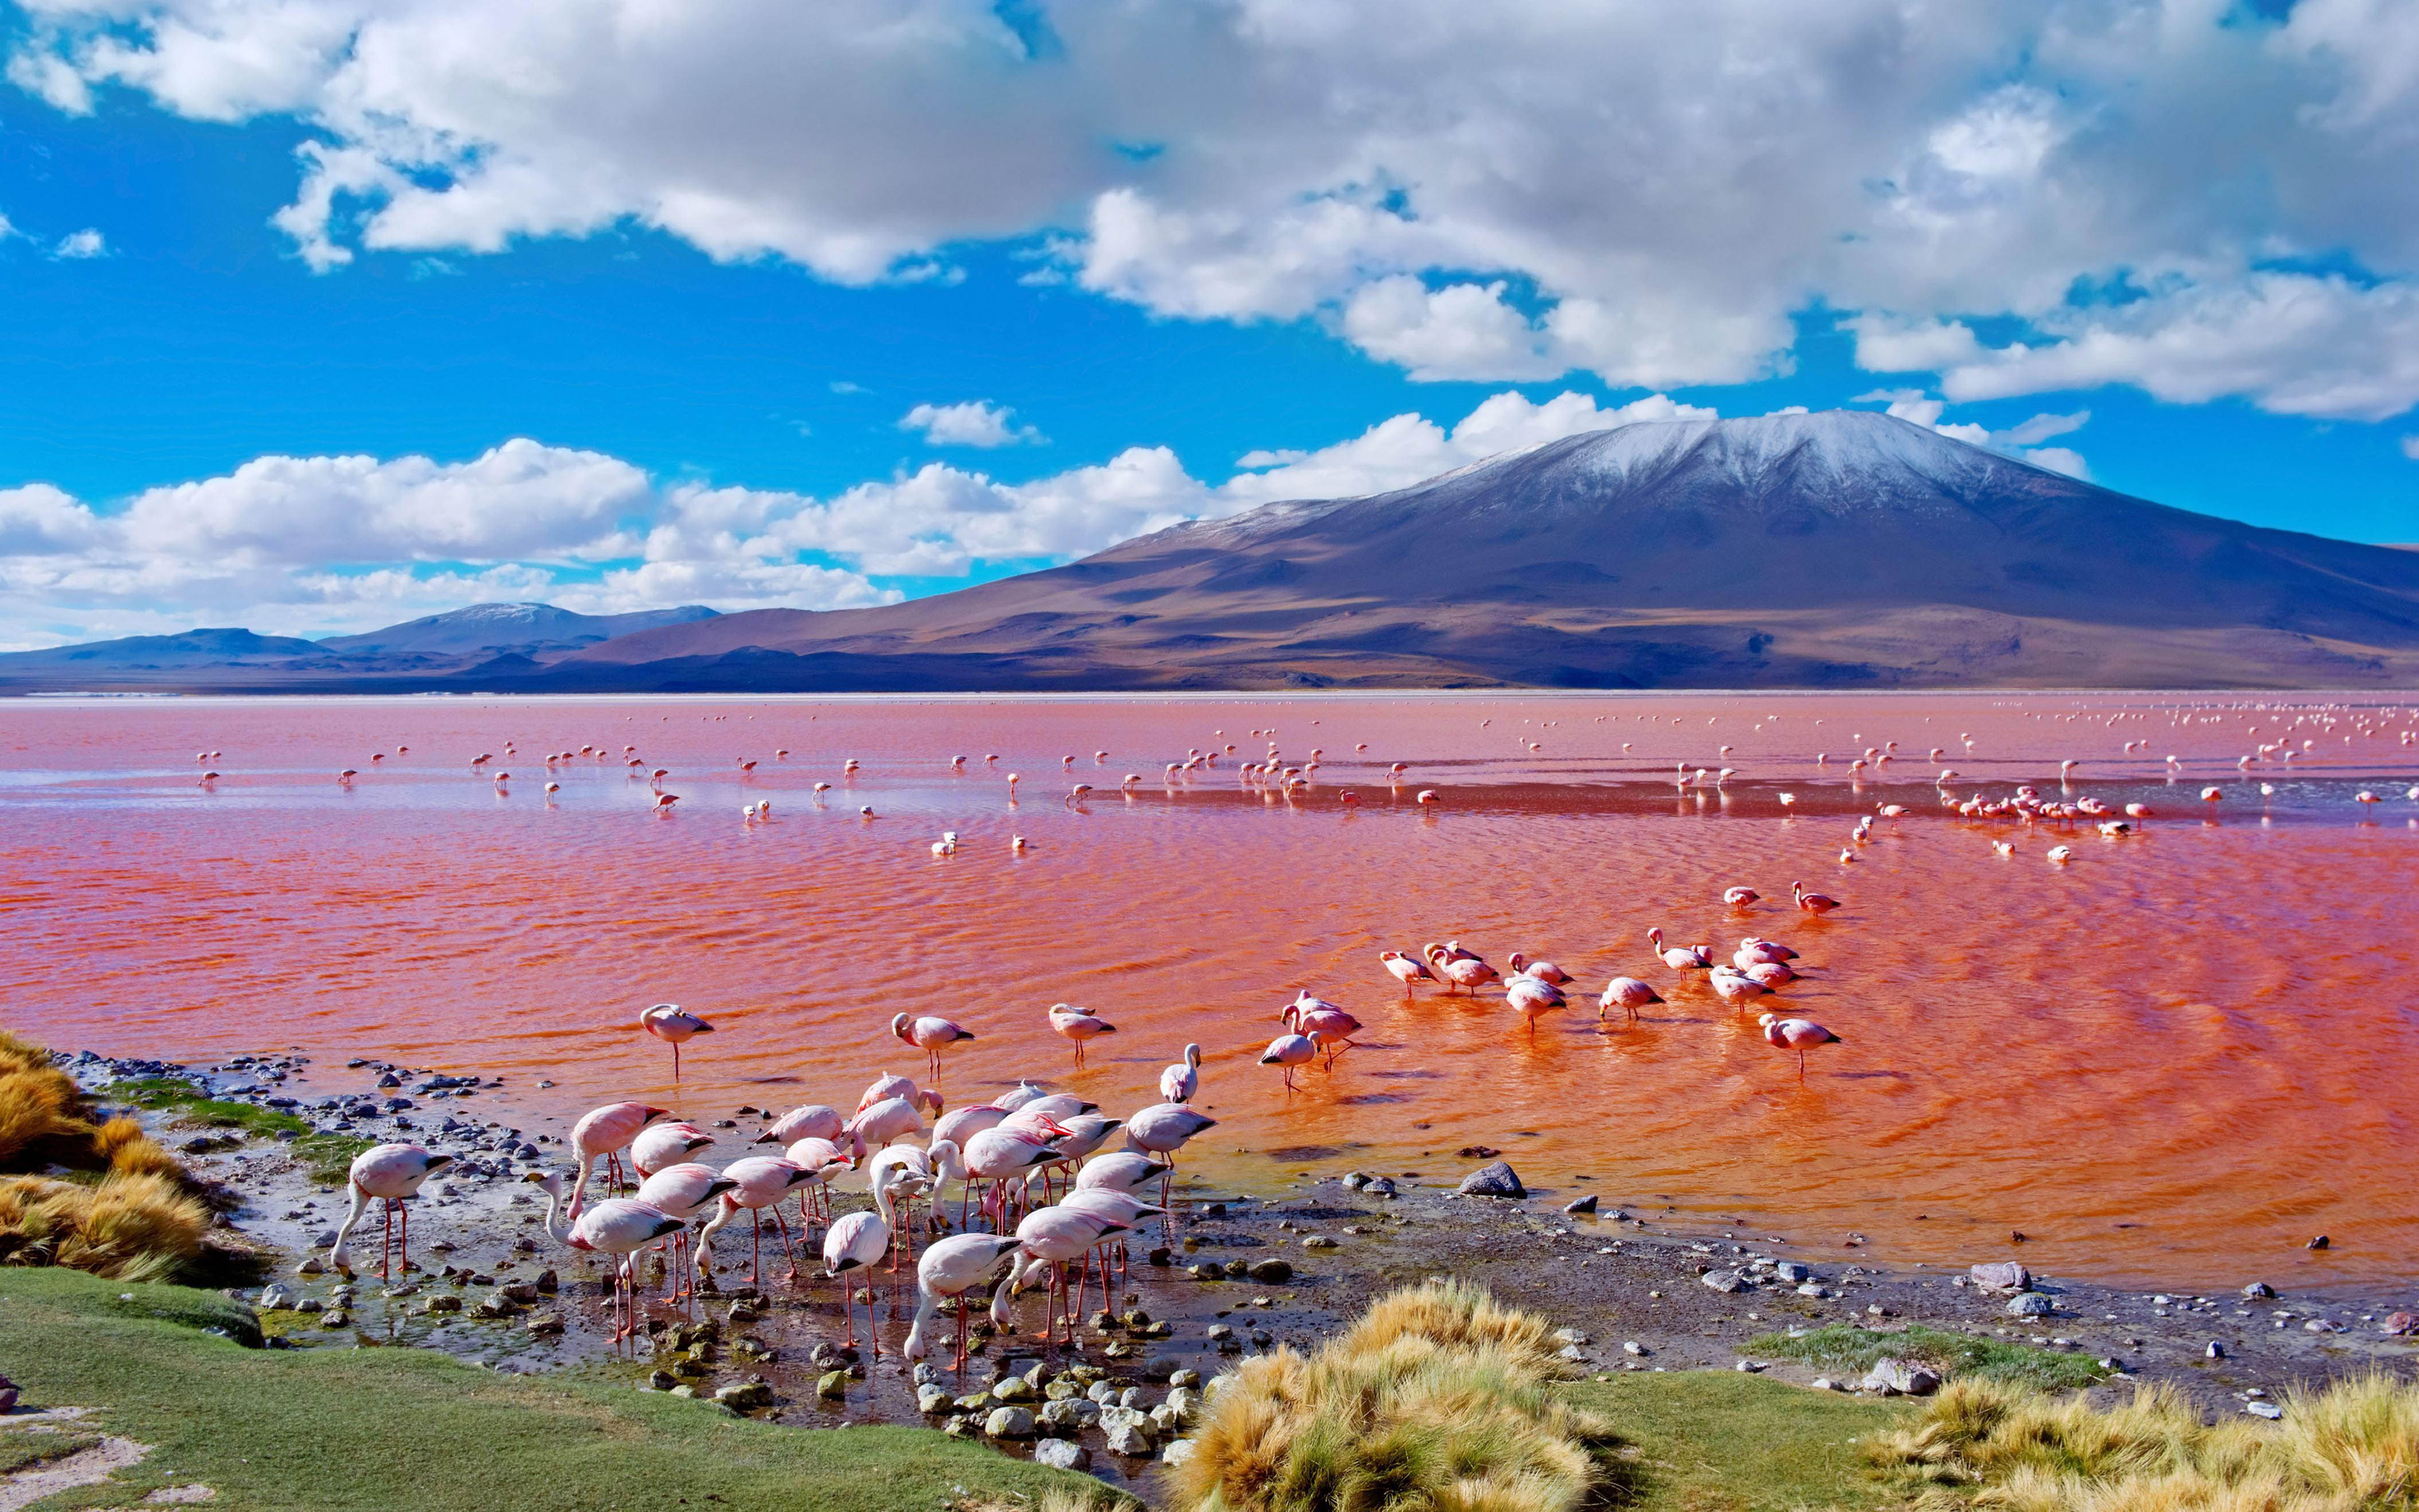 Pink flamingos laguna colorada multicolored salty lake in bolivia k ultra hd tv wallpaper for desktop